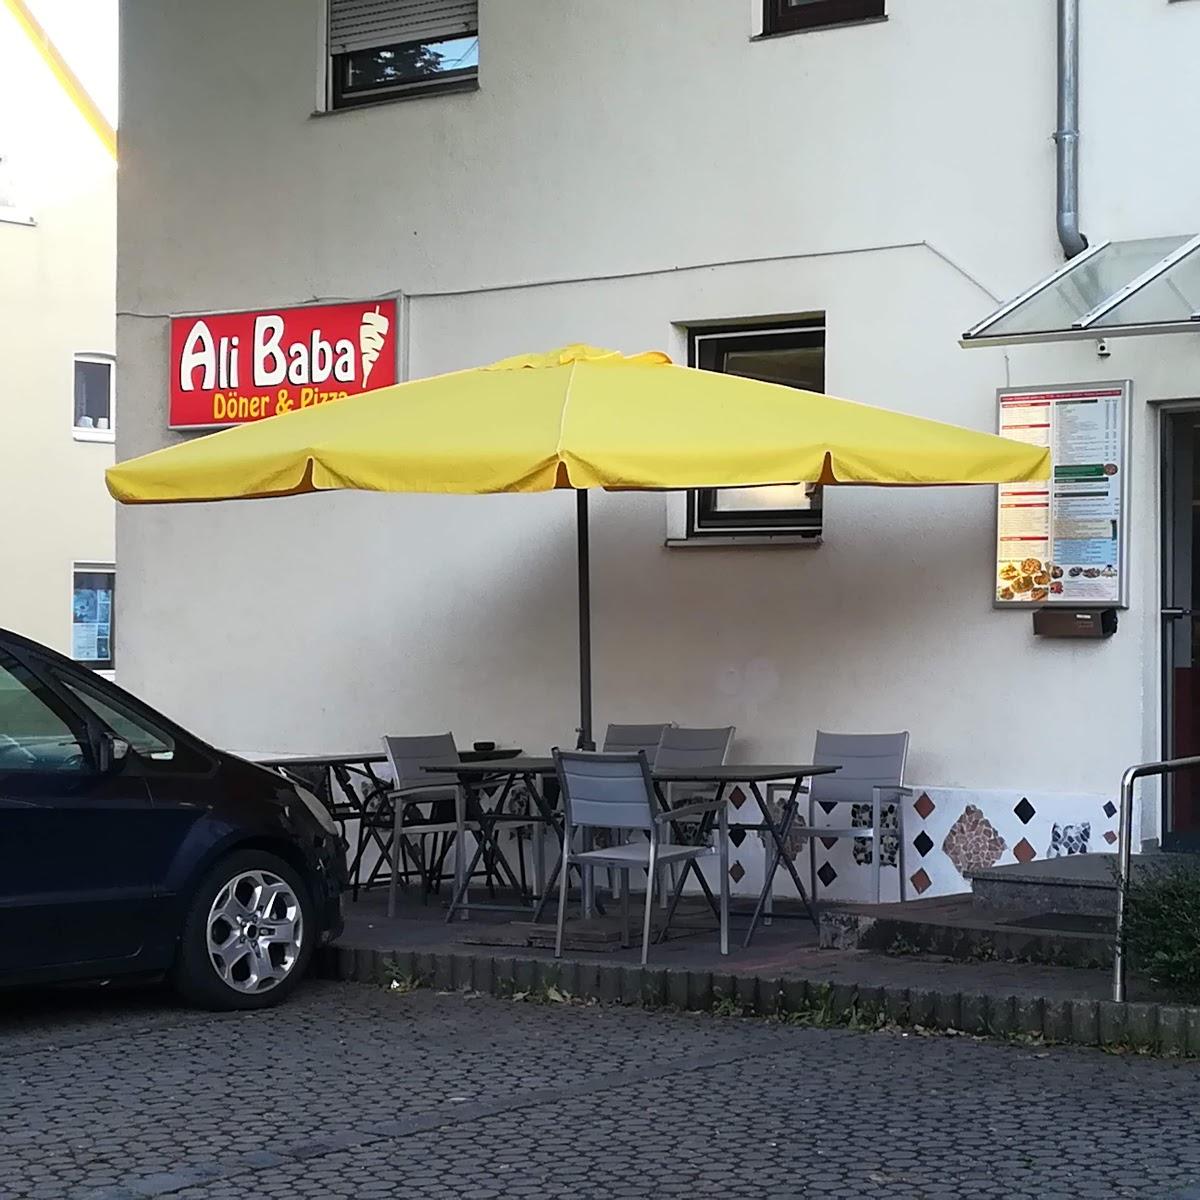 Restaurant "Ali Baba" in  Herbrechtingen